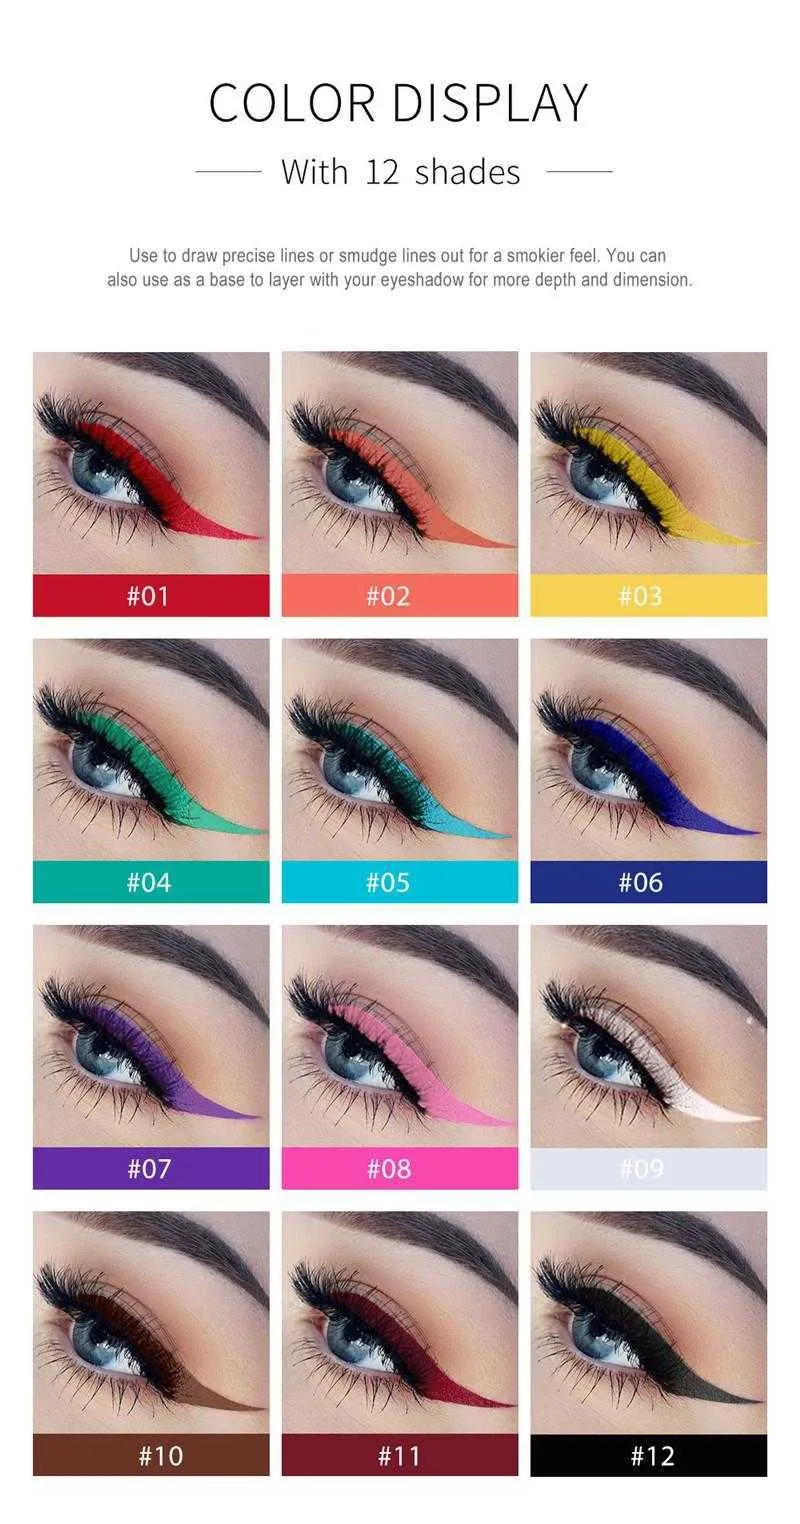 HANDAIYAN Matte Liquid Eyeliner Pencil Set Waterproof Rainbow Candy Color Eye Liner